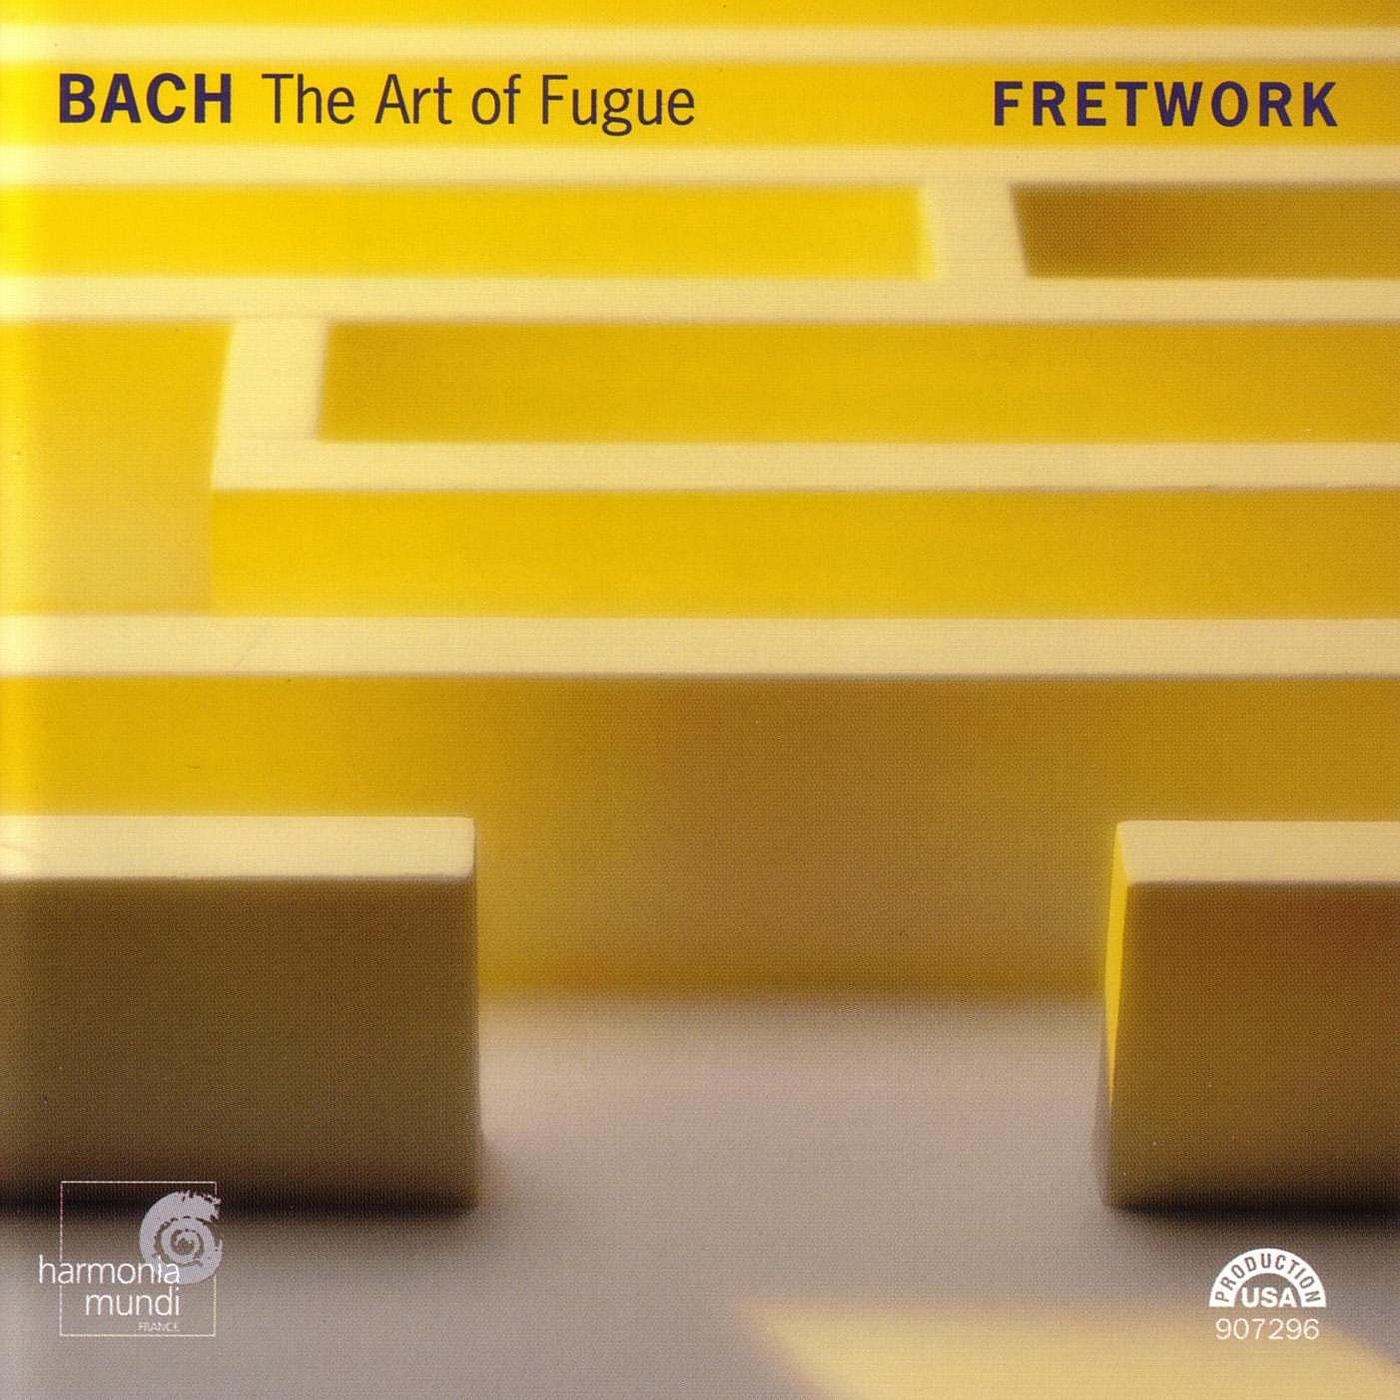 The Art of Fugue, BWV 1080: Contrapunctus [13] - inversus